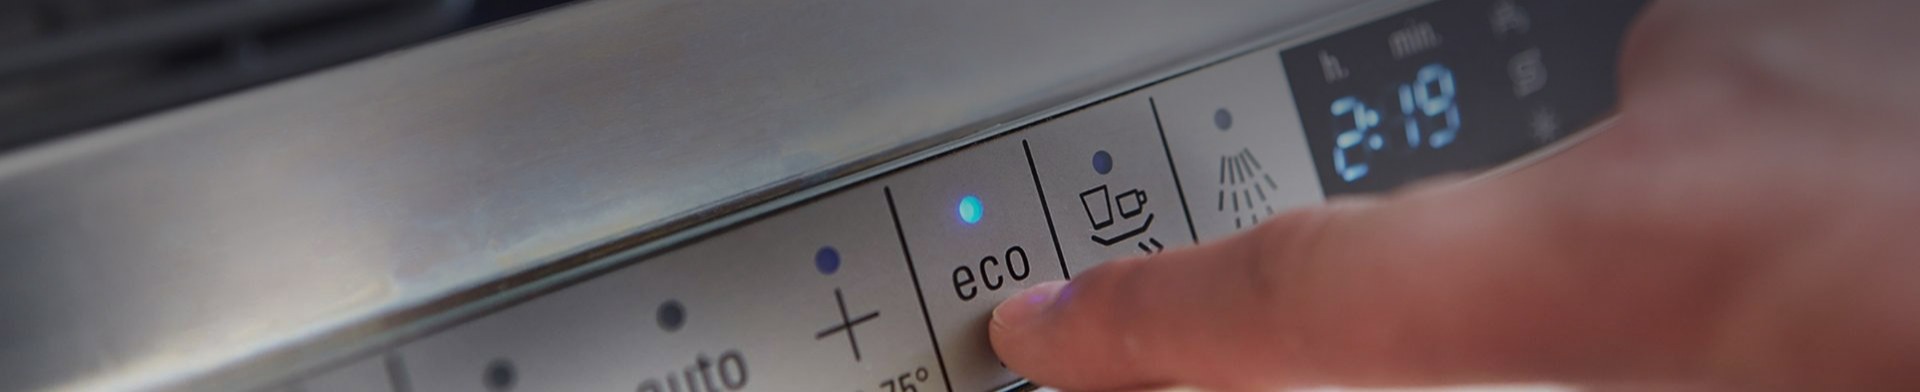 Ecofriendly quick wash setting on dishwasher